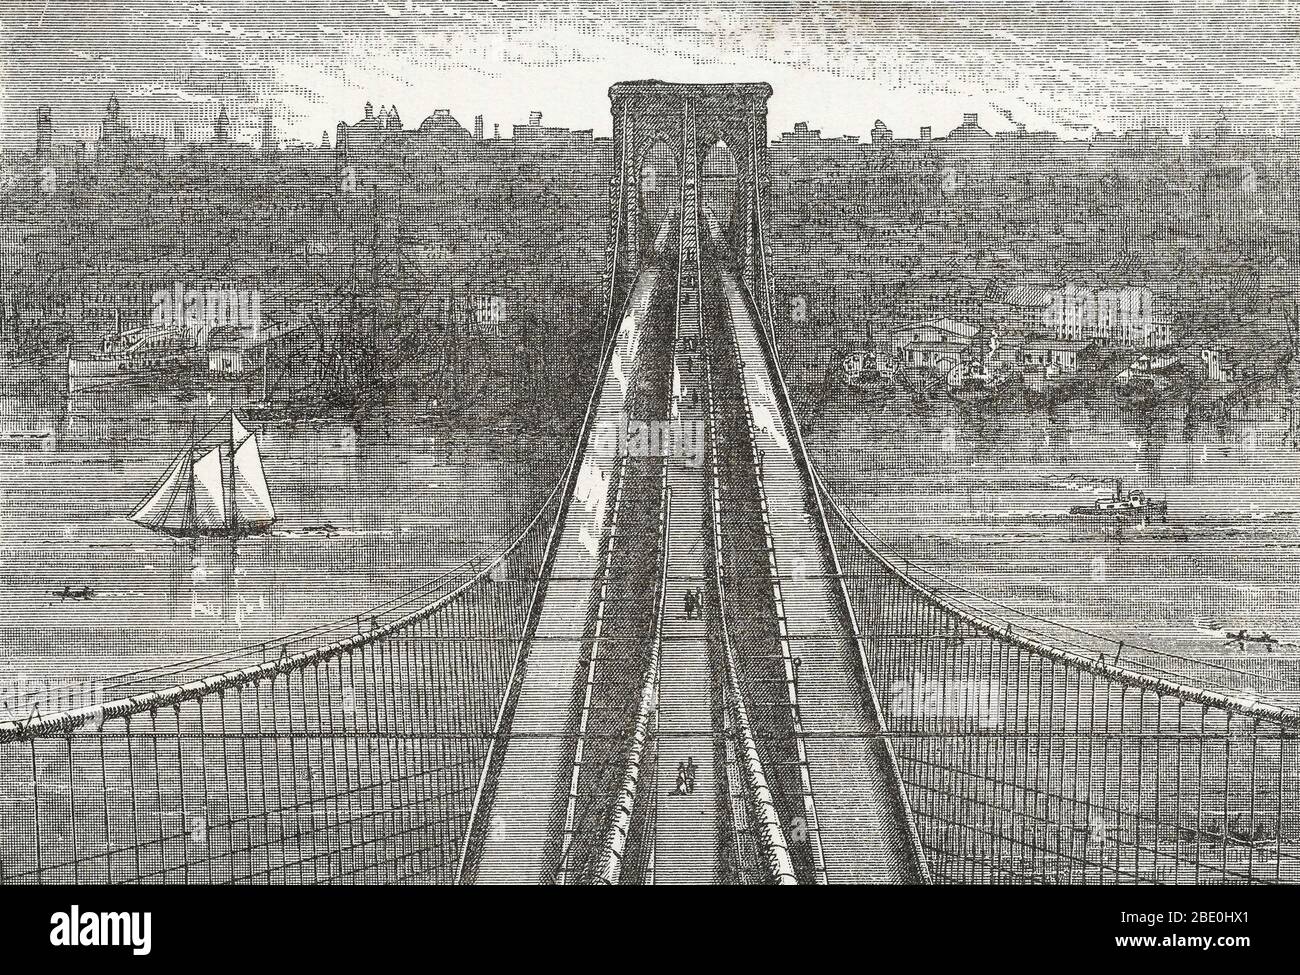 Der Blick von der Spitze des Brooklyn Tower, mit Blick auf die Brooklyn Bridge und in Richtung New York. Aus einer unbekannten Broschüre über die Brücke, 1883. Die Brooklyn Bridge ist eine der ältesten Hängebrücken der Vereinigten Staaten. Das 1883 fertiggestellte Hotel verbindet die Bezirke Manhattan und Brooklyn über den East River. Mit einer Spannweite von 1,595.5 Fuß war sie die längste Hängebrücke der Welt von ihrer Eröffnung bis 1903 und die erste Stahldrahthängebrücke. Ursprünglich als New York und Brooklyn Bridge und als East River Bridge bezeichnet, war es formell nam Stockfoto